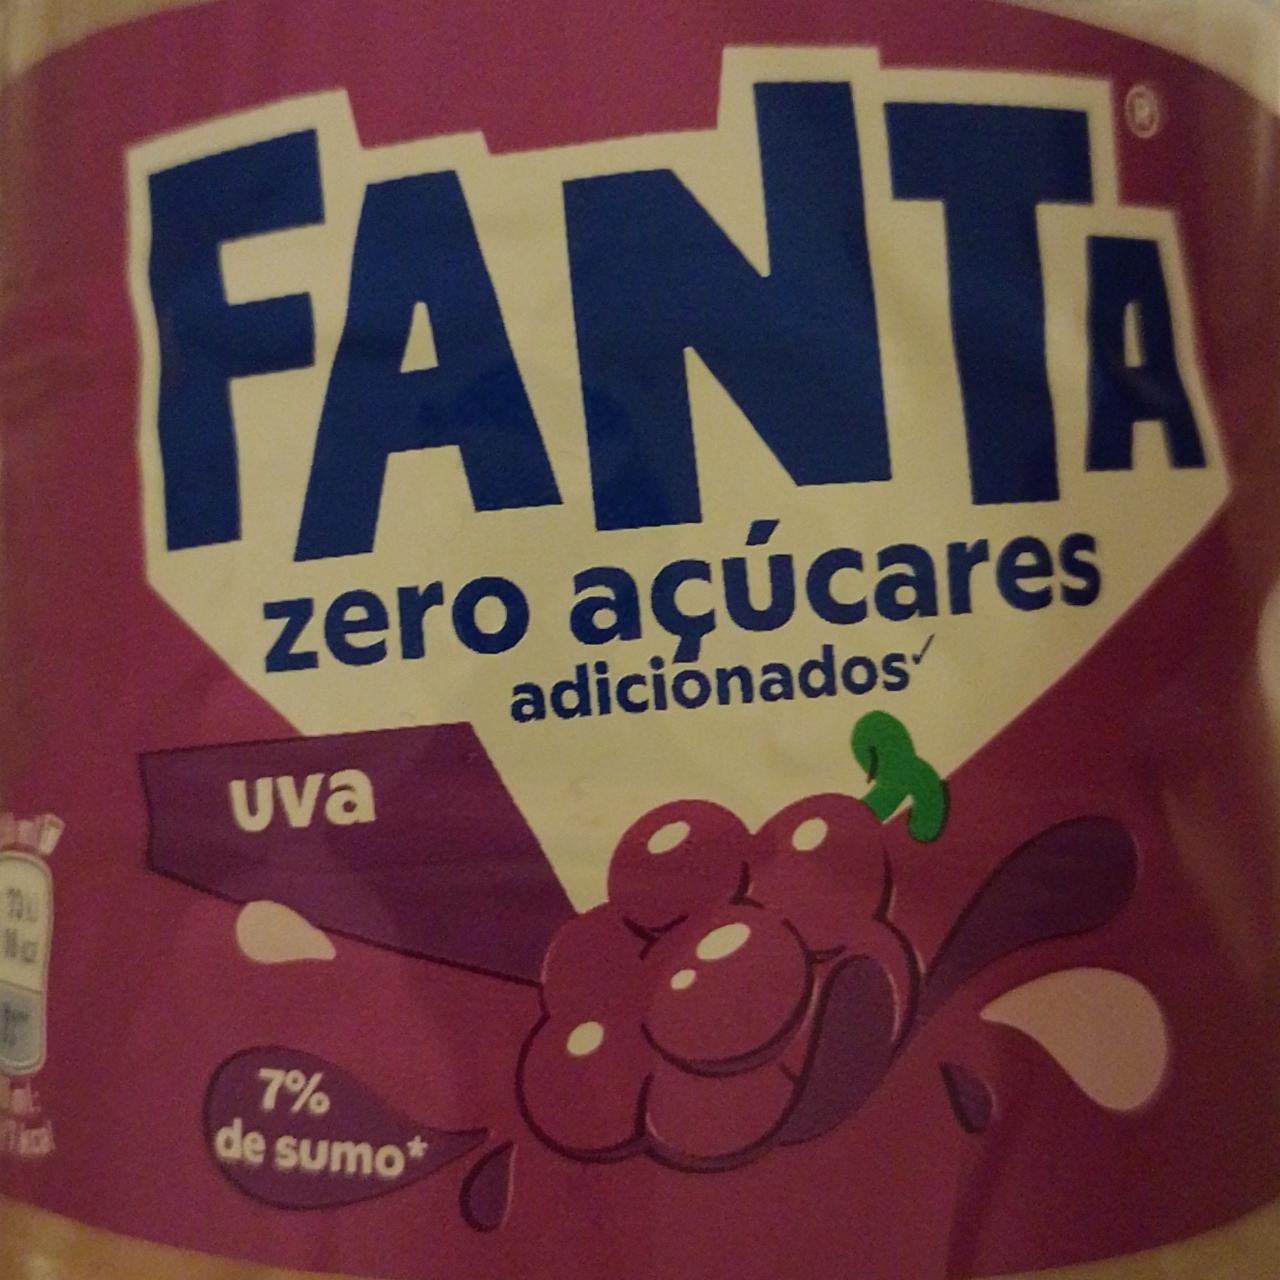 Fotografie - Zero acúcares adicionados uva Fanta